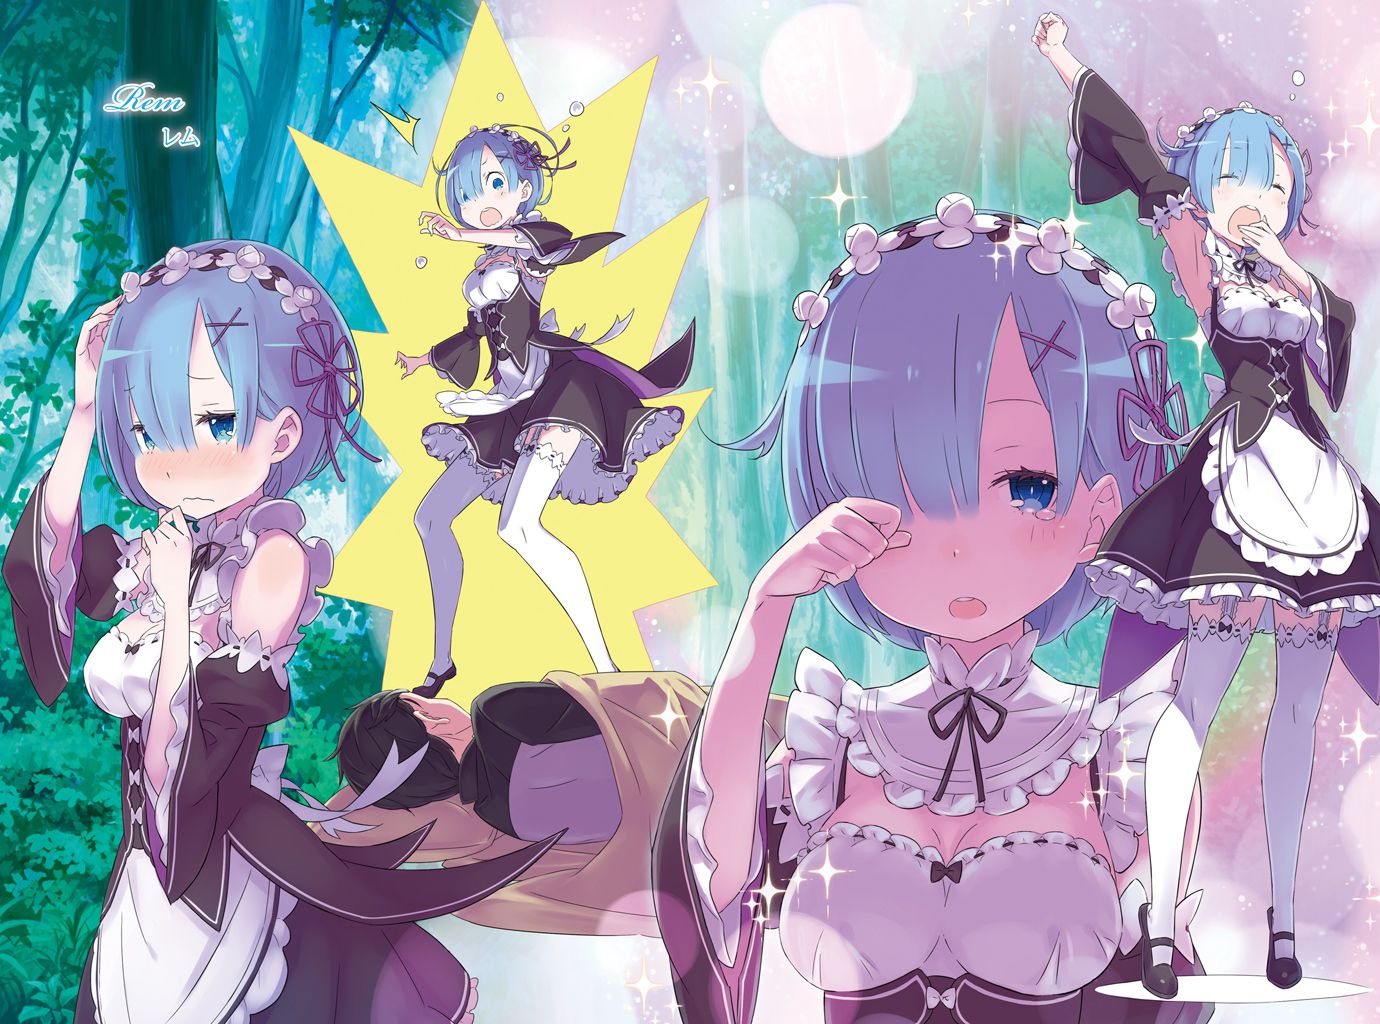 "Rezero" dakimakura REM's popular release postponed past the pillow cover image of wwwwwwwwwww 10